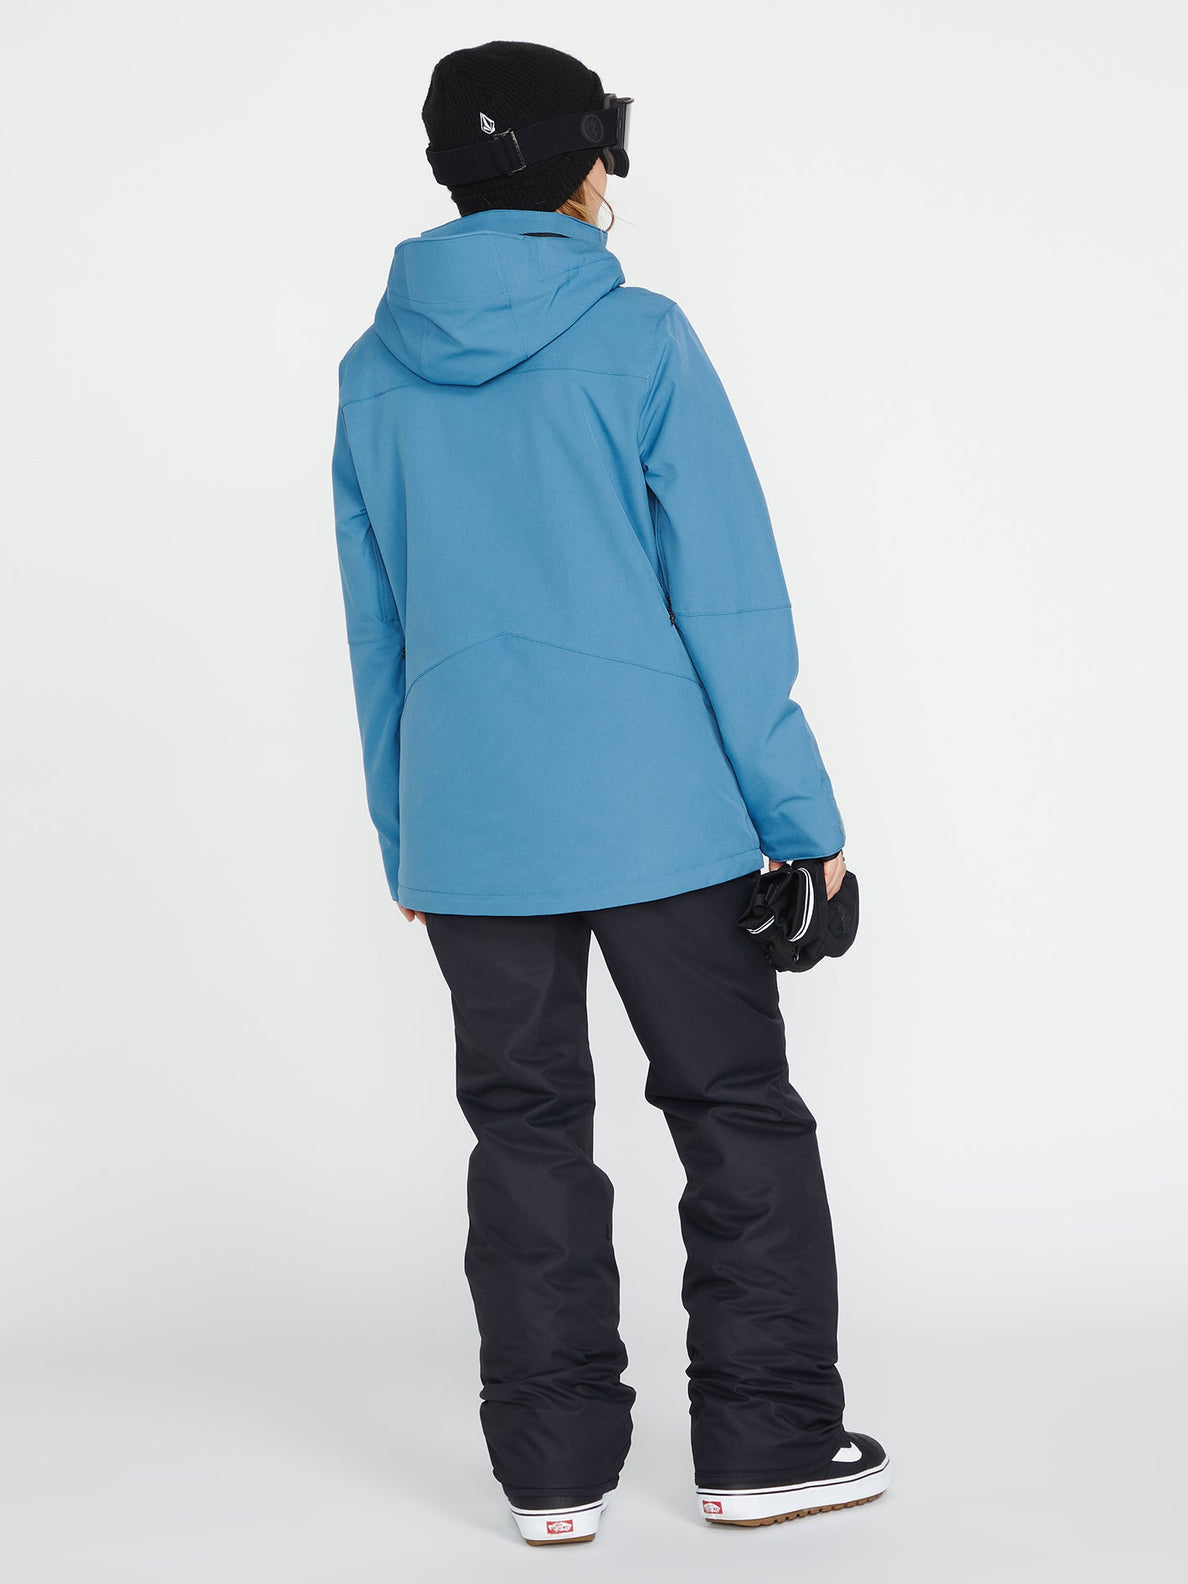 Chaqueta de snowboard Mujer Volcom Shelter 3D Stretch Jacket - Petrol Blue | surfdevils.com